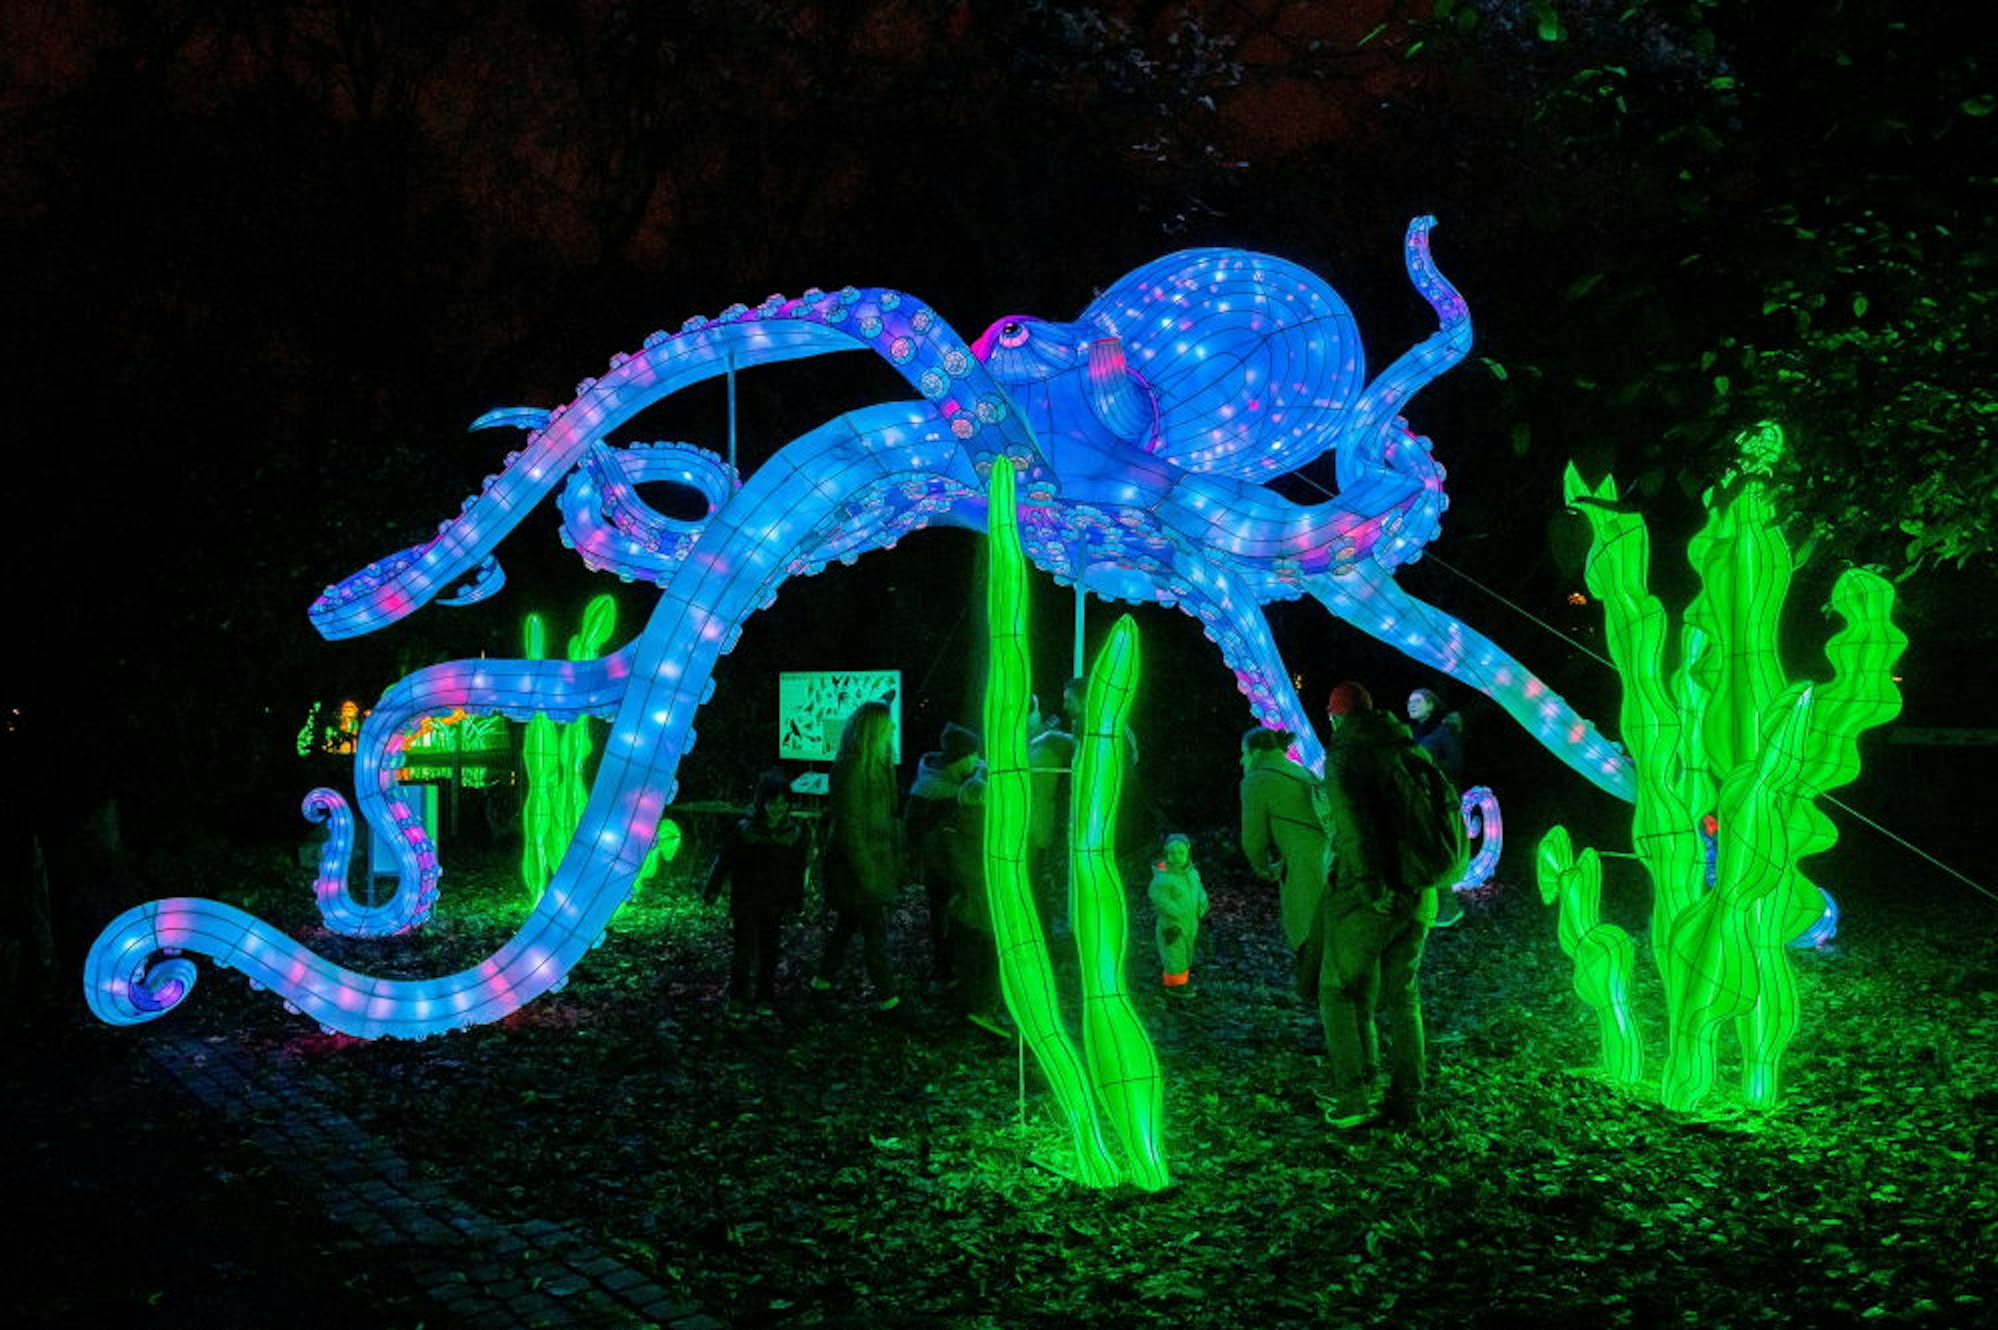 Ein riesiger Oktopus leuchtet in strahlendem Blau.